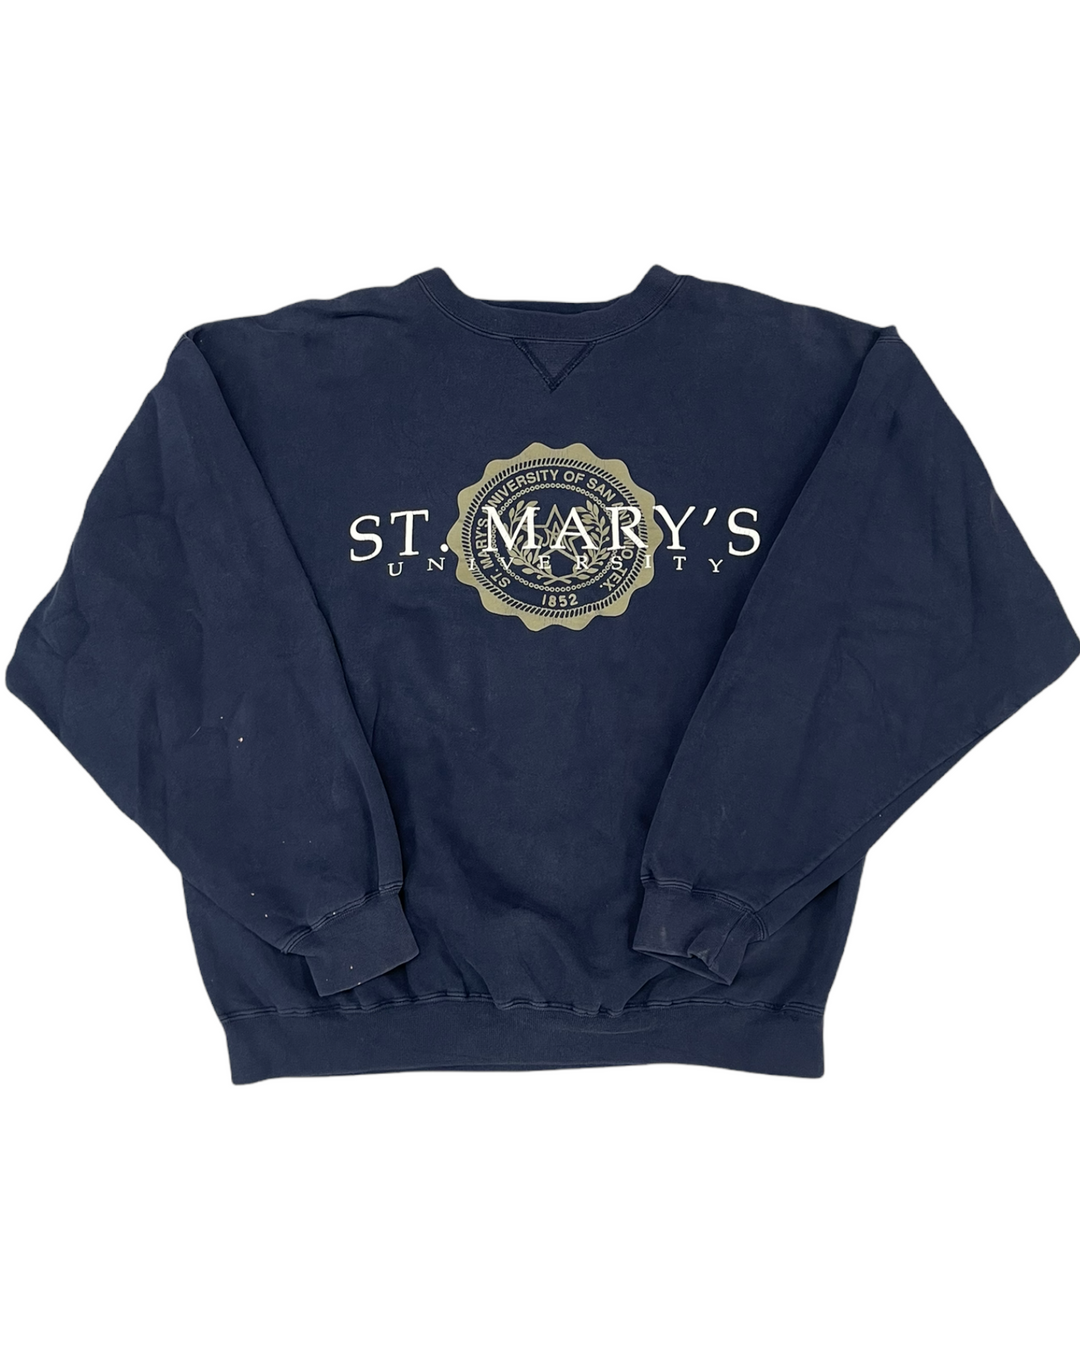 St Mary’s Vintage Sweatshirt